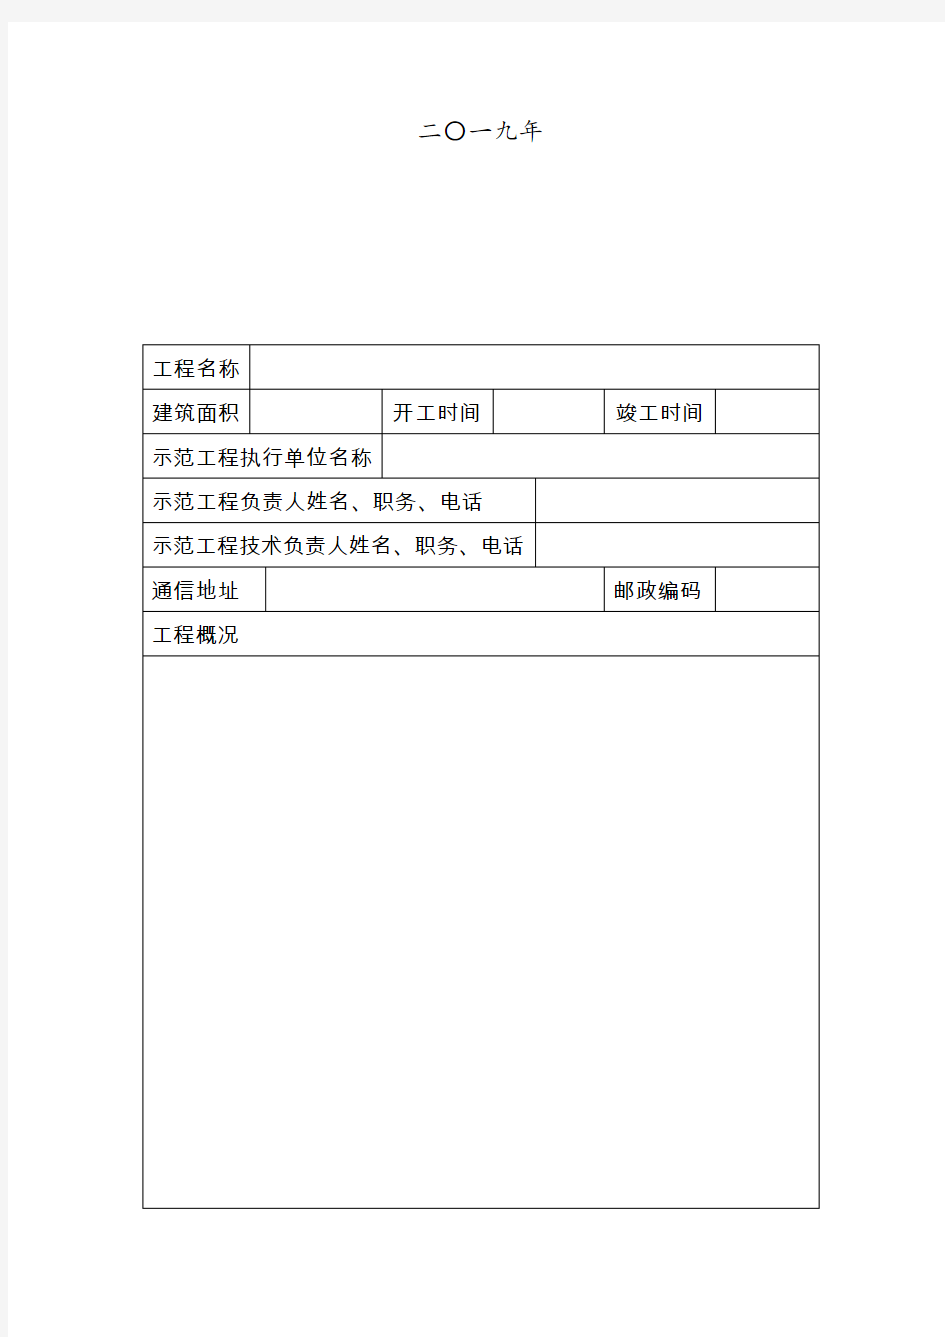 山西省建筑业新技术应用示范工程立项申报书(省建设厅质量安全监督处)